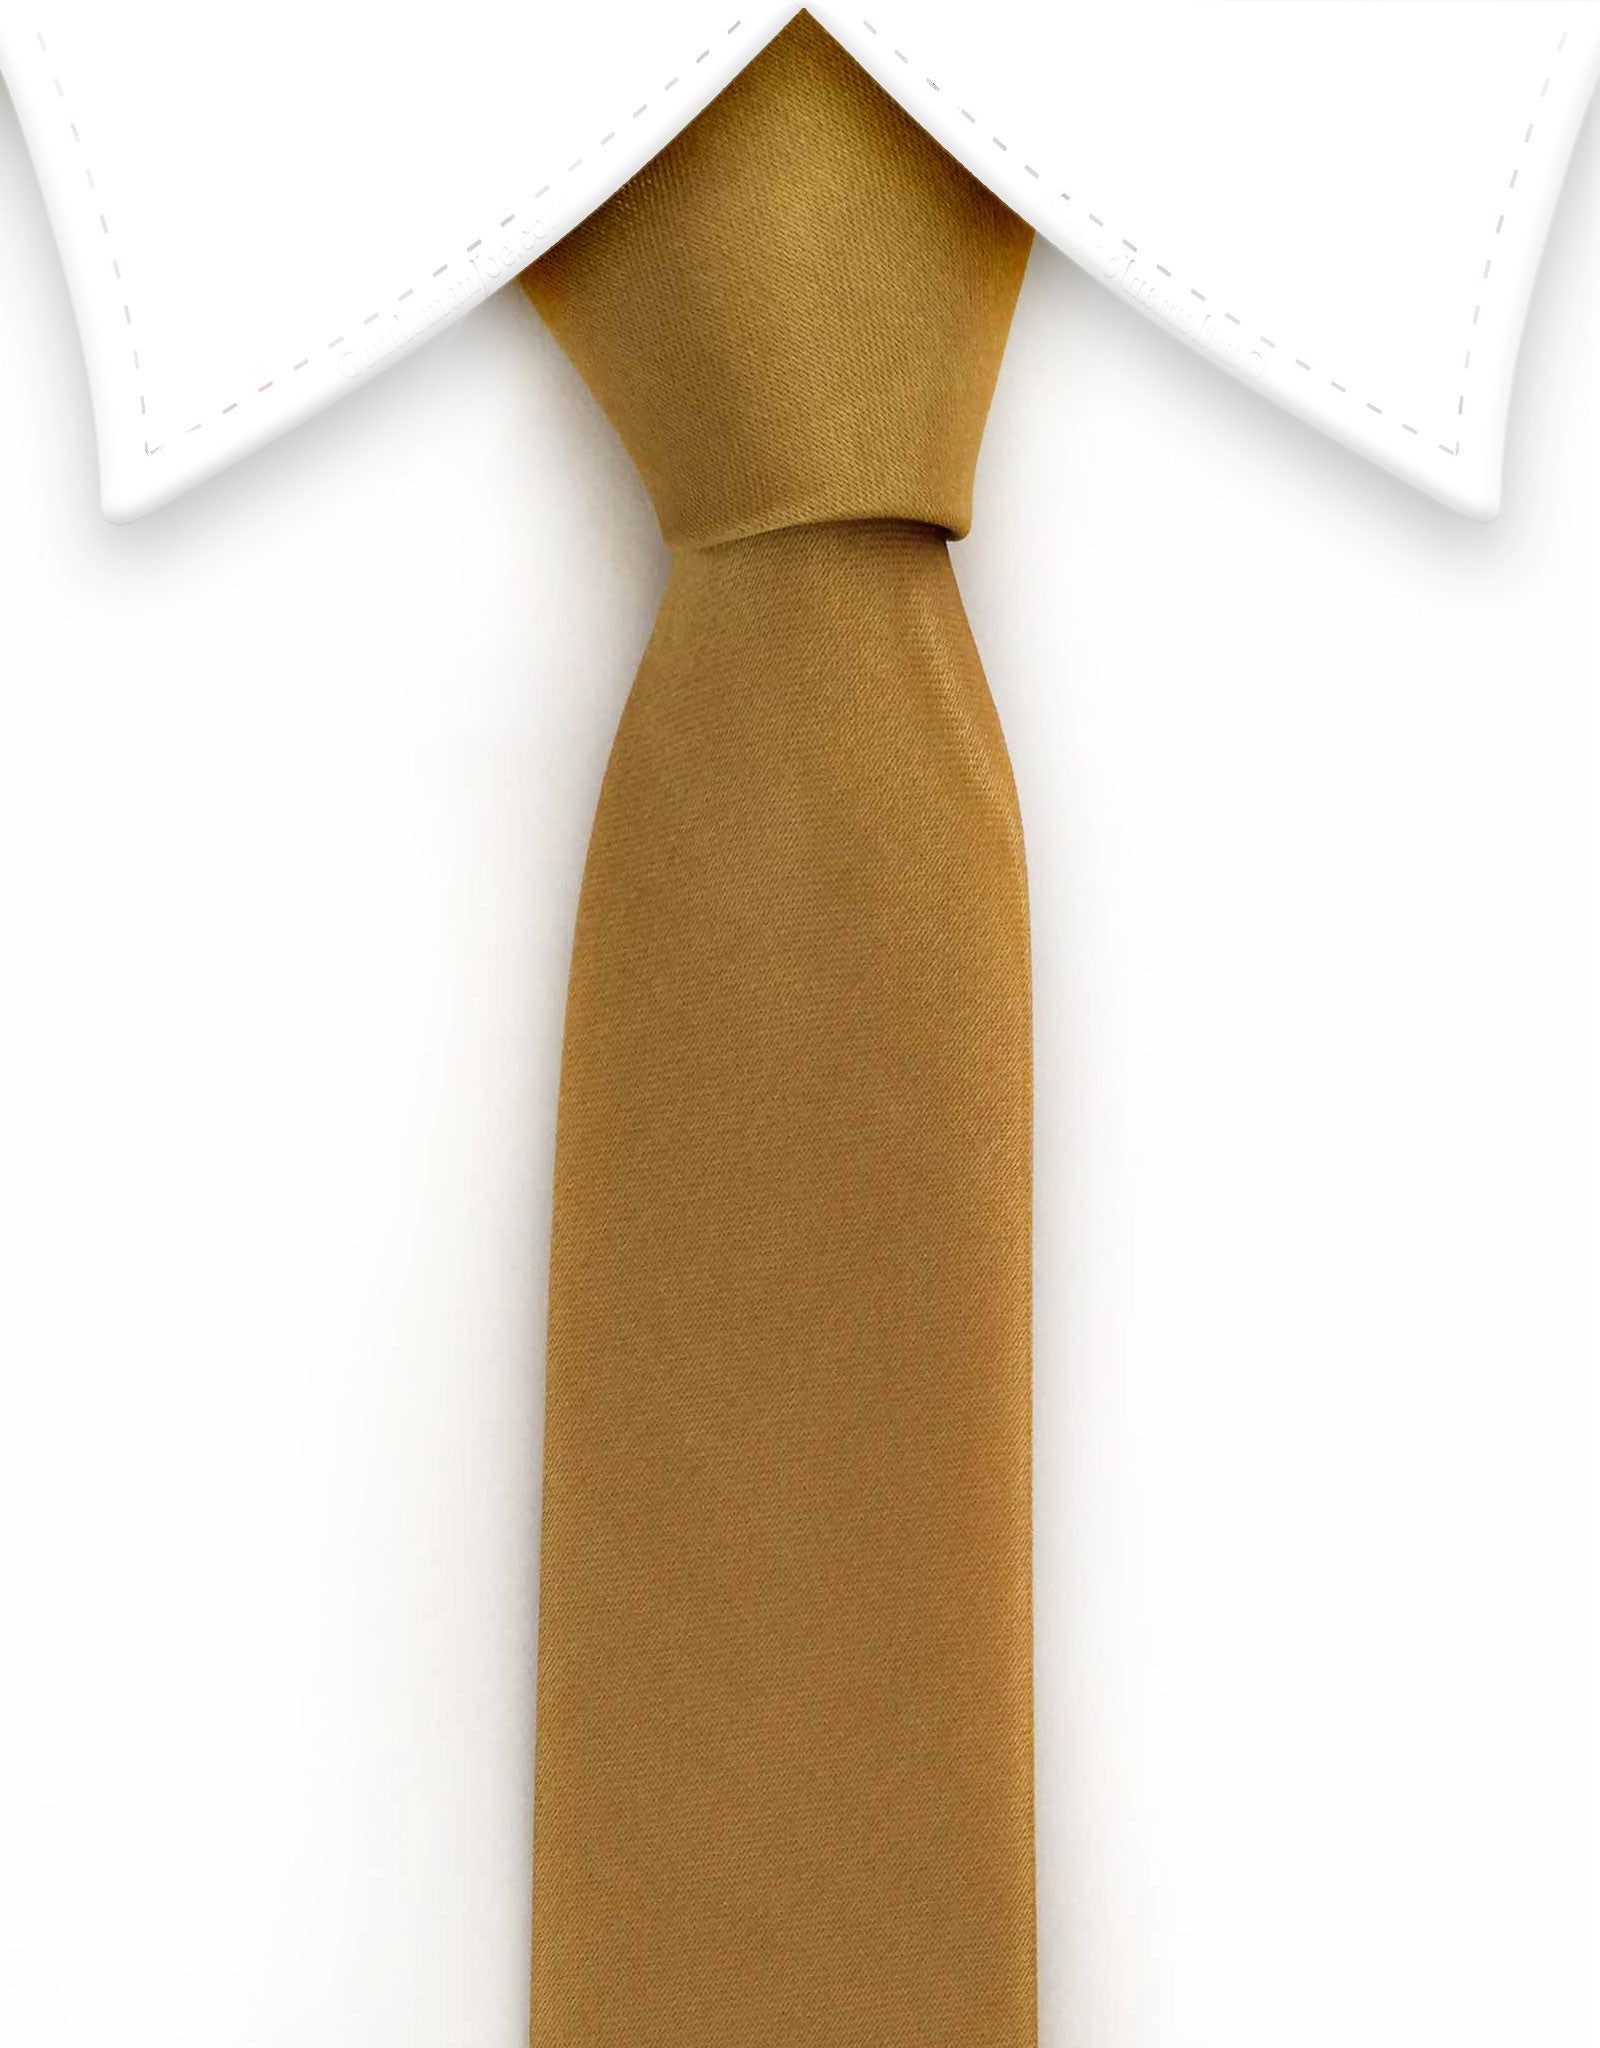 Gold Skinny Tie